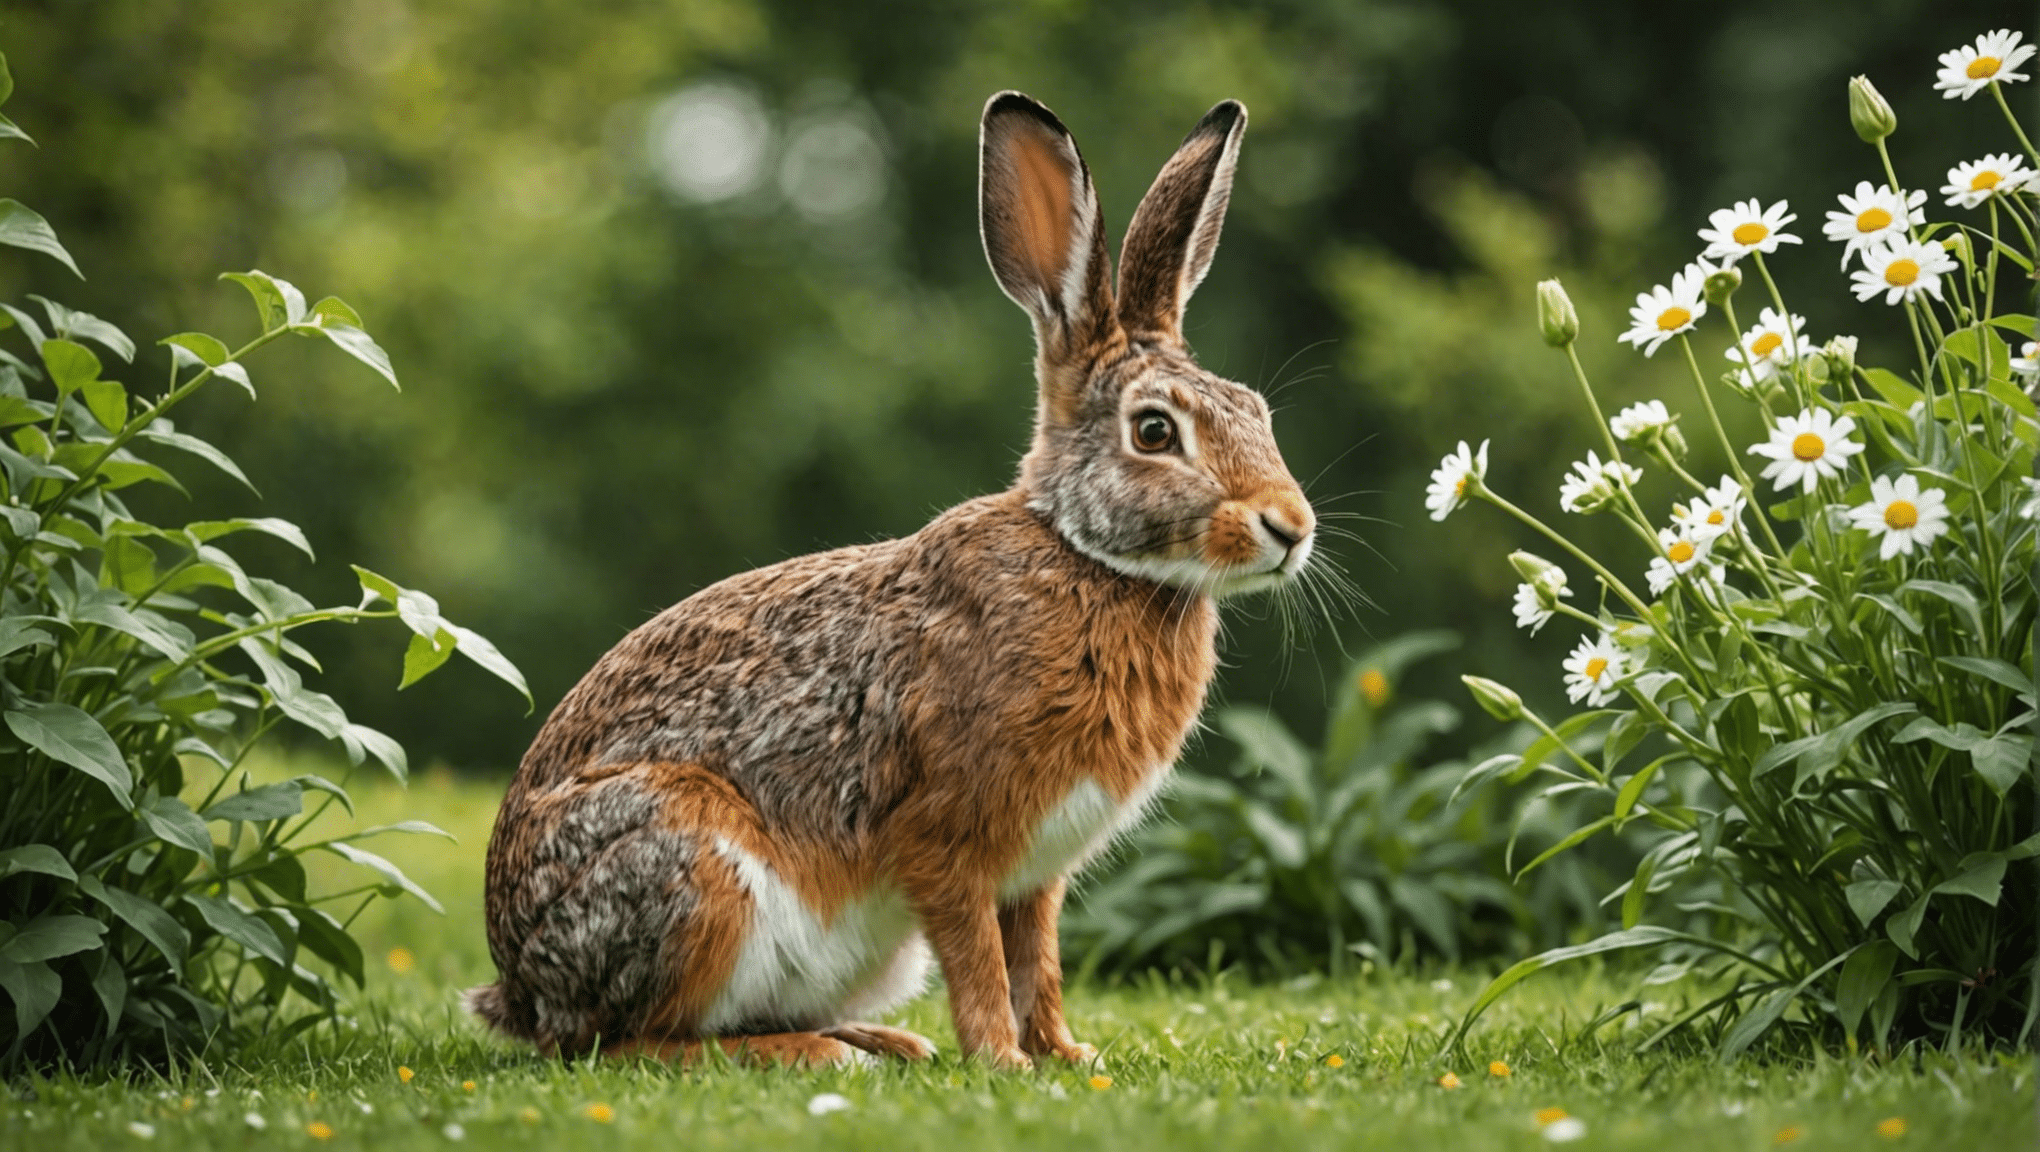 odkryj różnice między zającami i królikami w tej wnikliwej analizie ich unikalnych cech i zachowań.